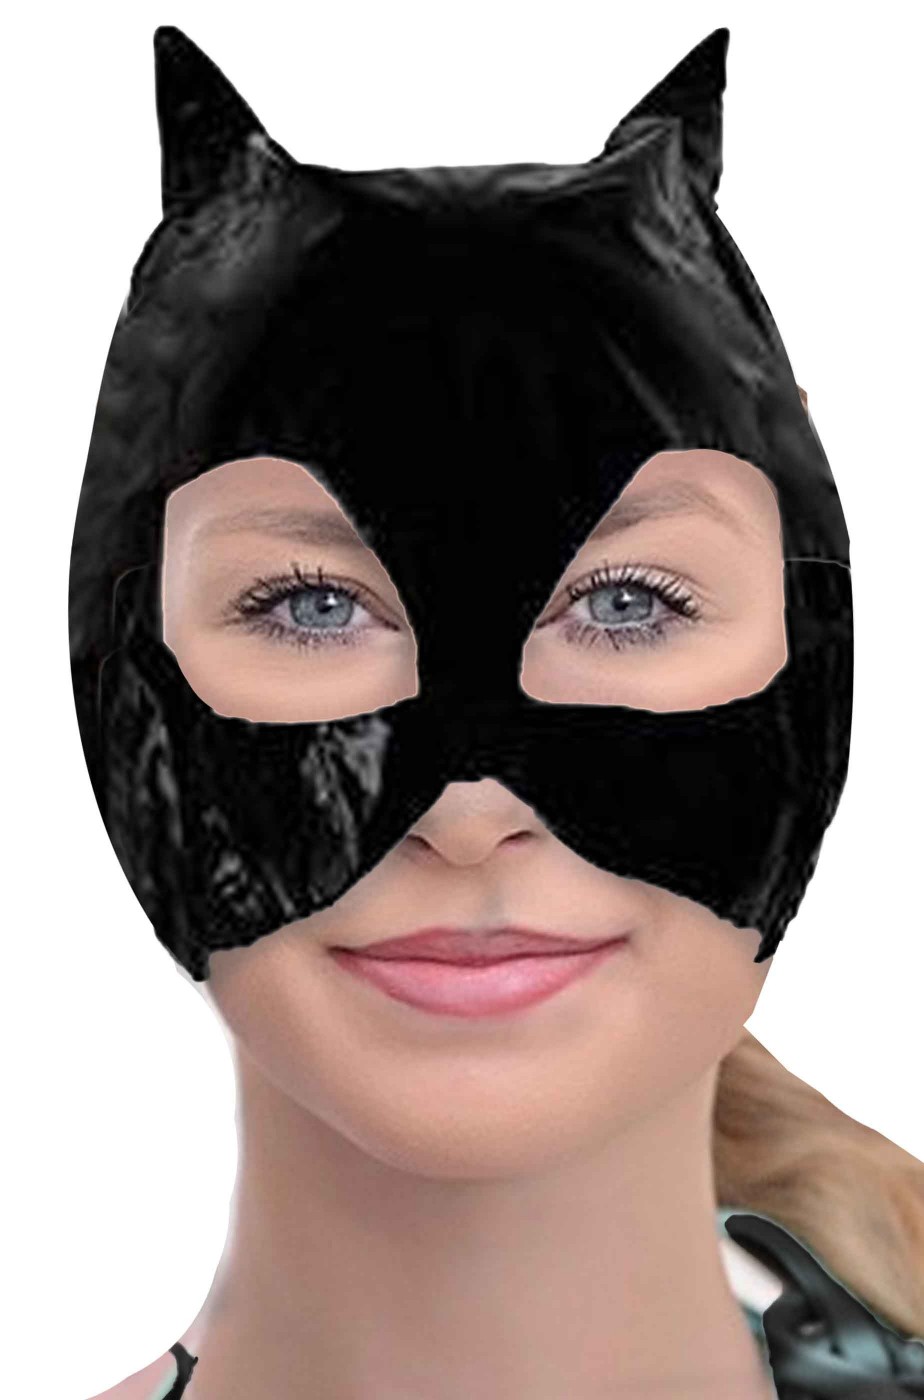 Maschera Batgirl o Catwoman economica in vinile